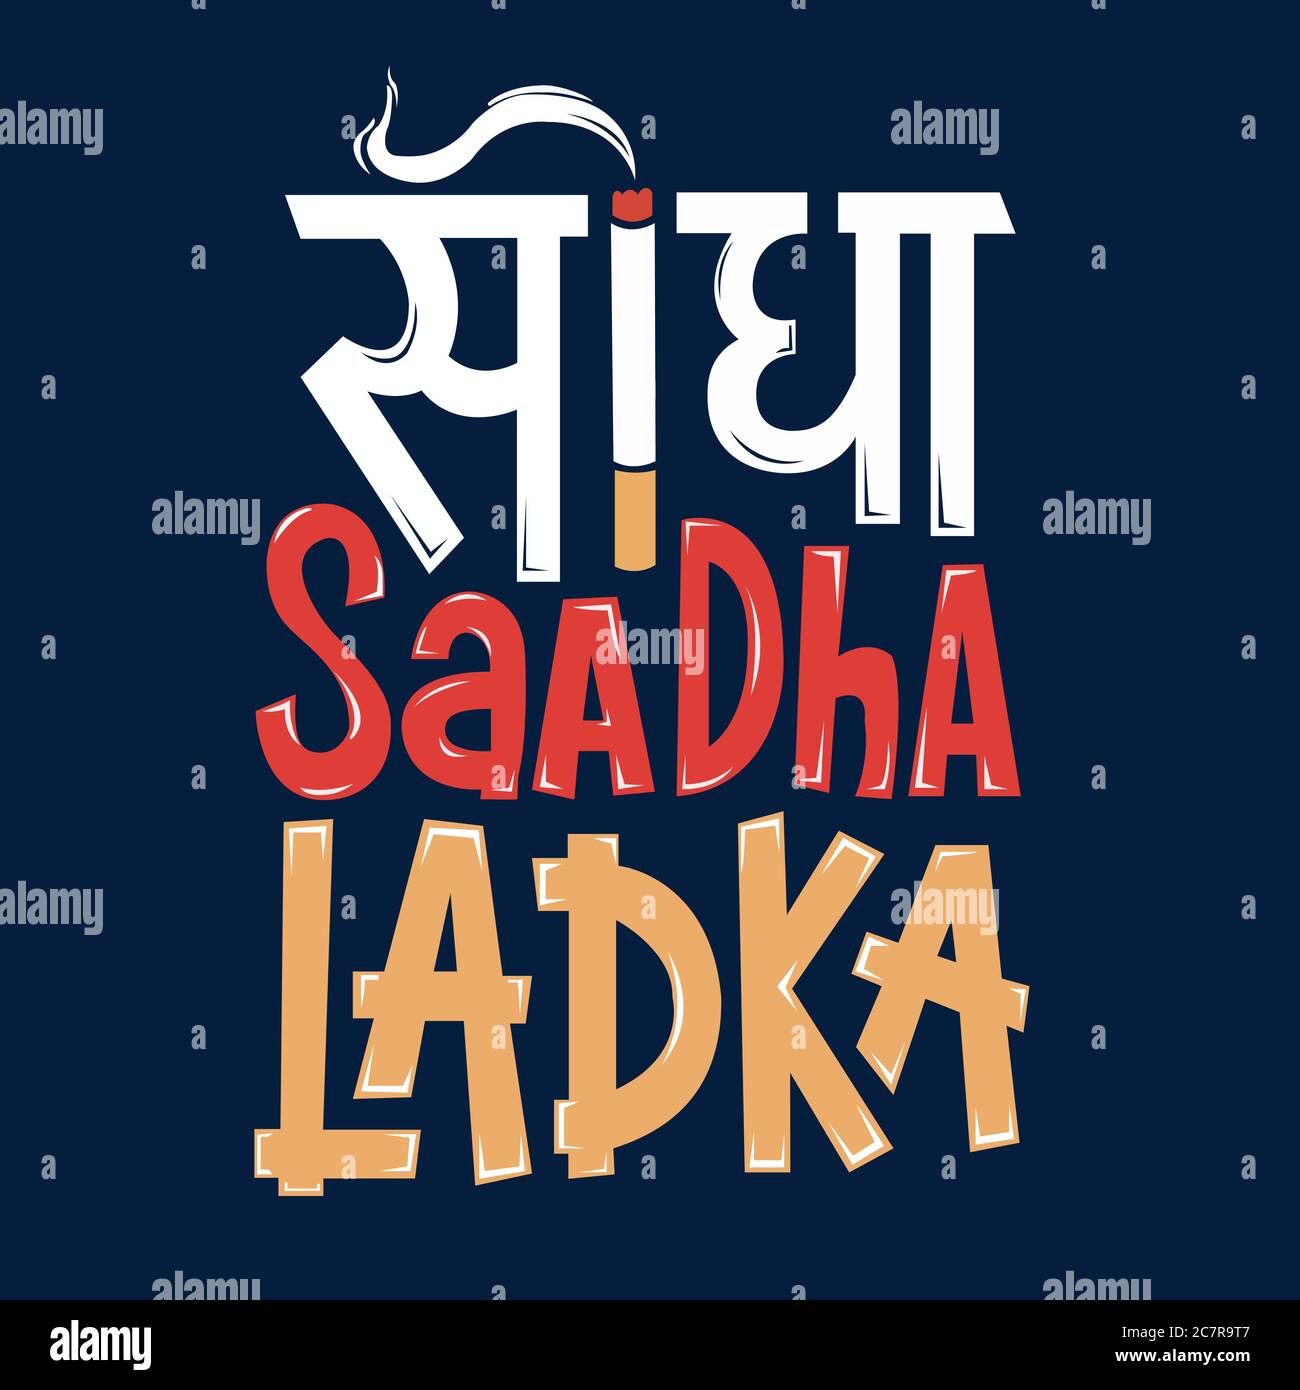 Sidha Saadha Ladka ist der beliebteste Satz der Hindi-Sprache. Dieser Satz bedeutet auf sarkastische Weise "Ich bin ein guter Junge" Stock Vektor